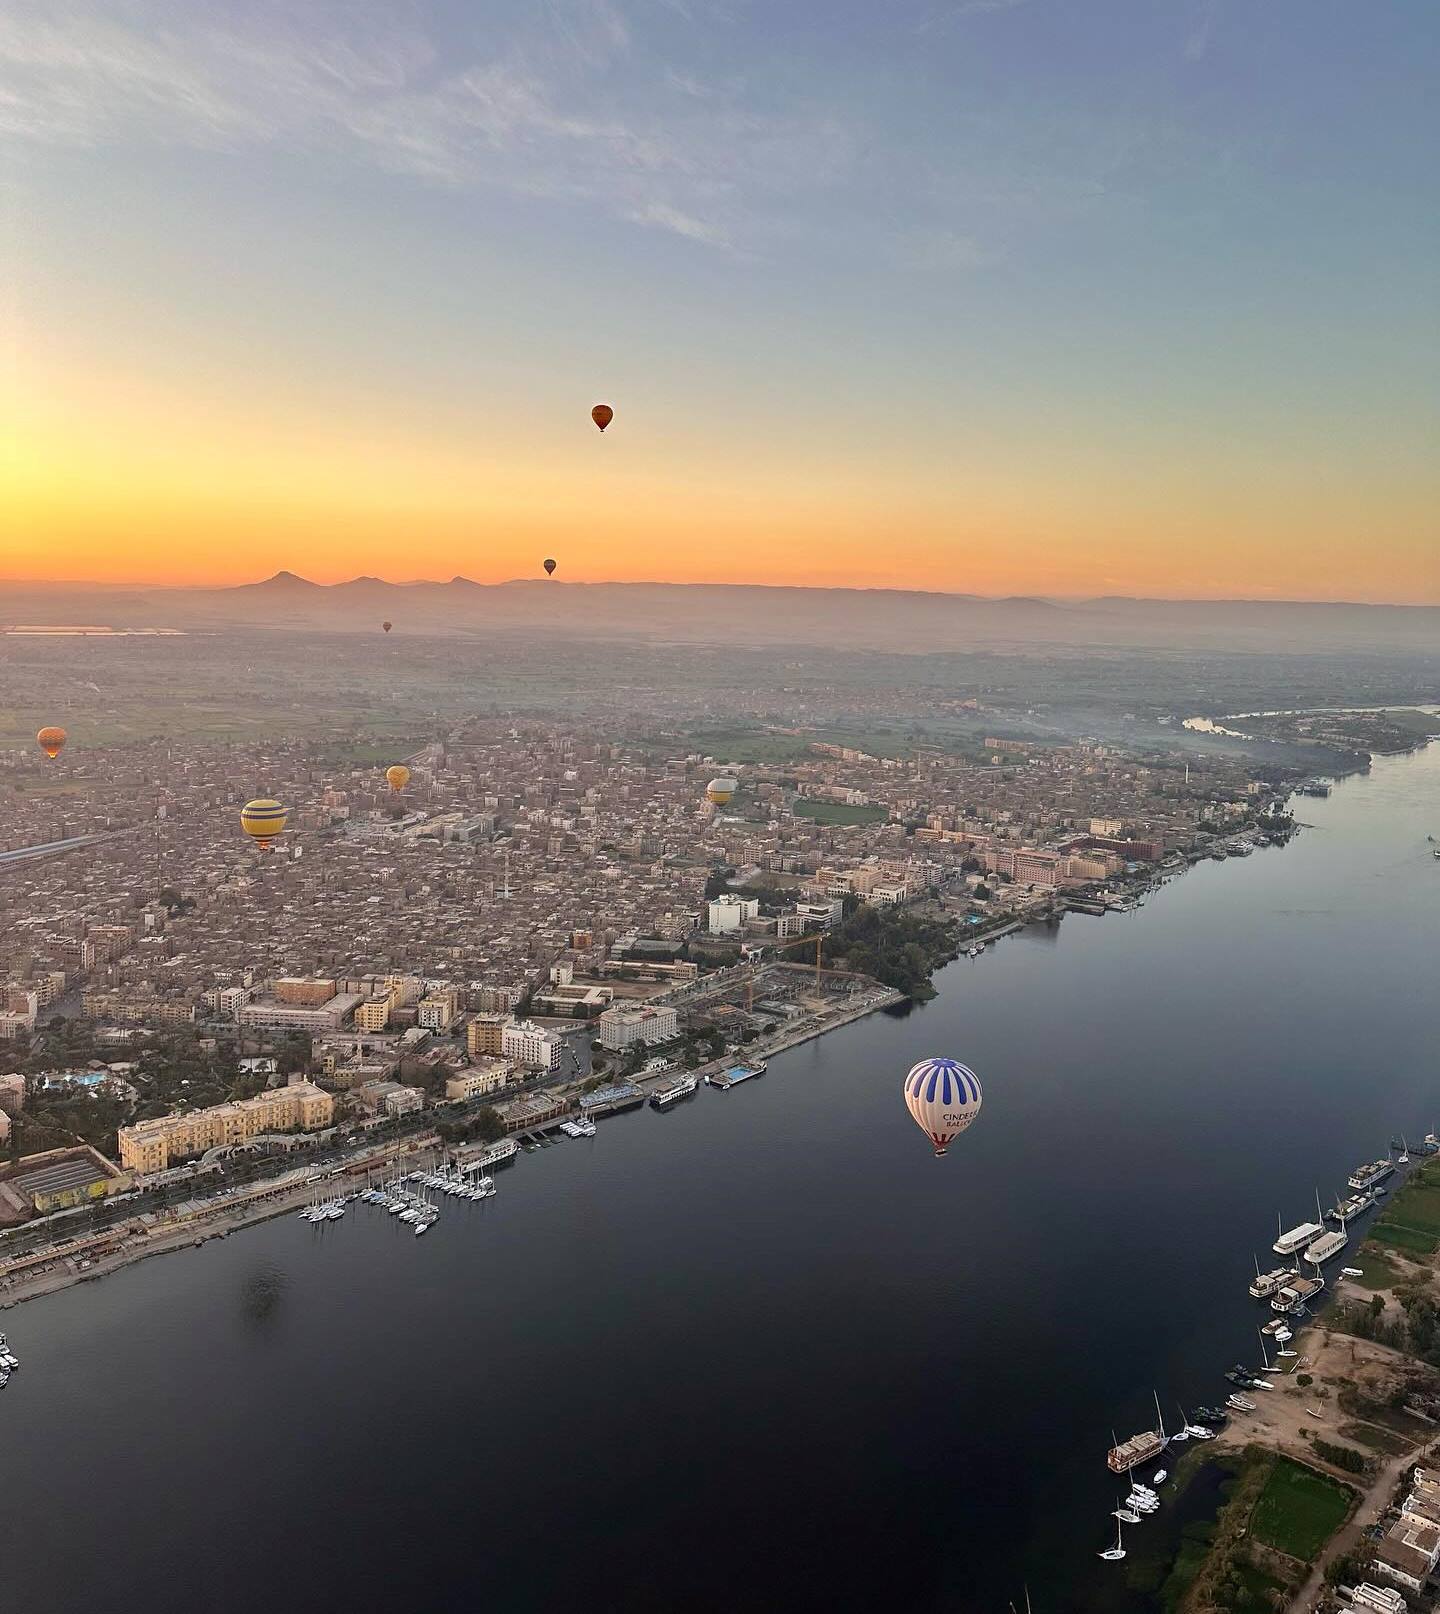 رحلات البالون الطائر فى سماء الأقصر فوق النيل